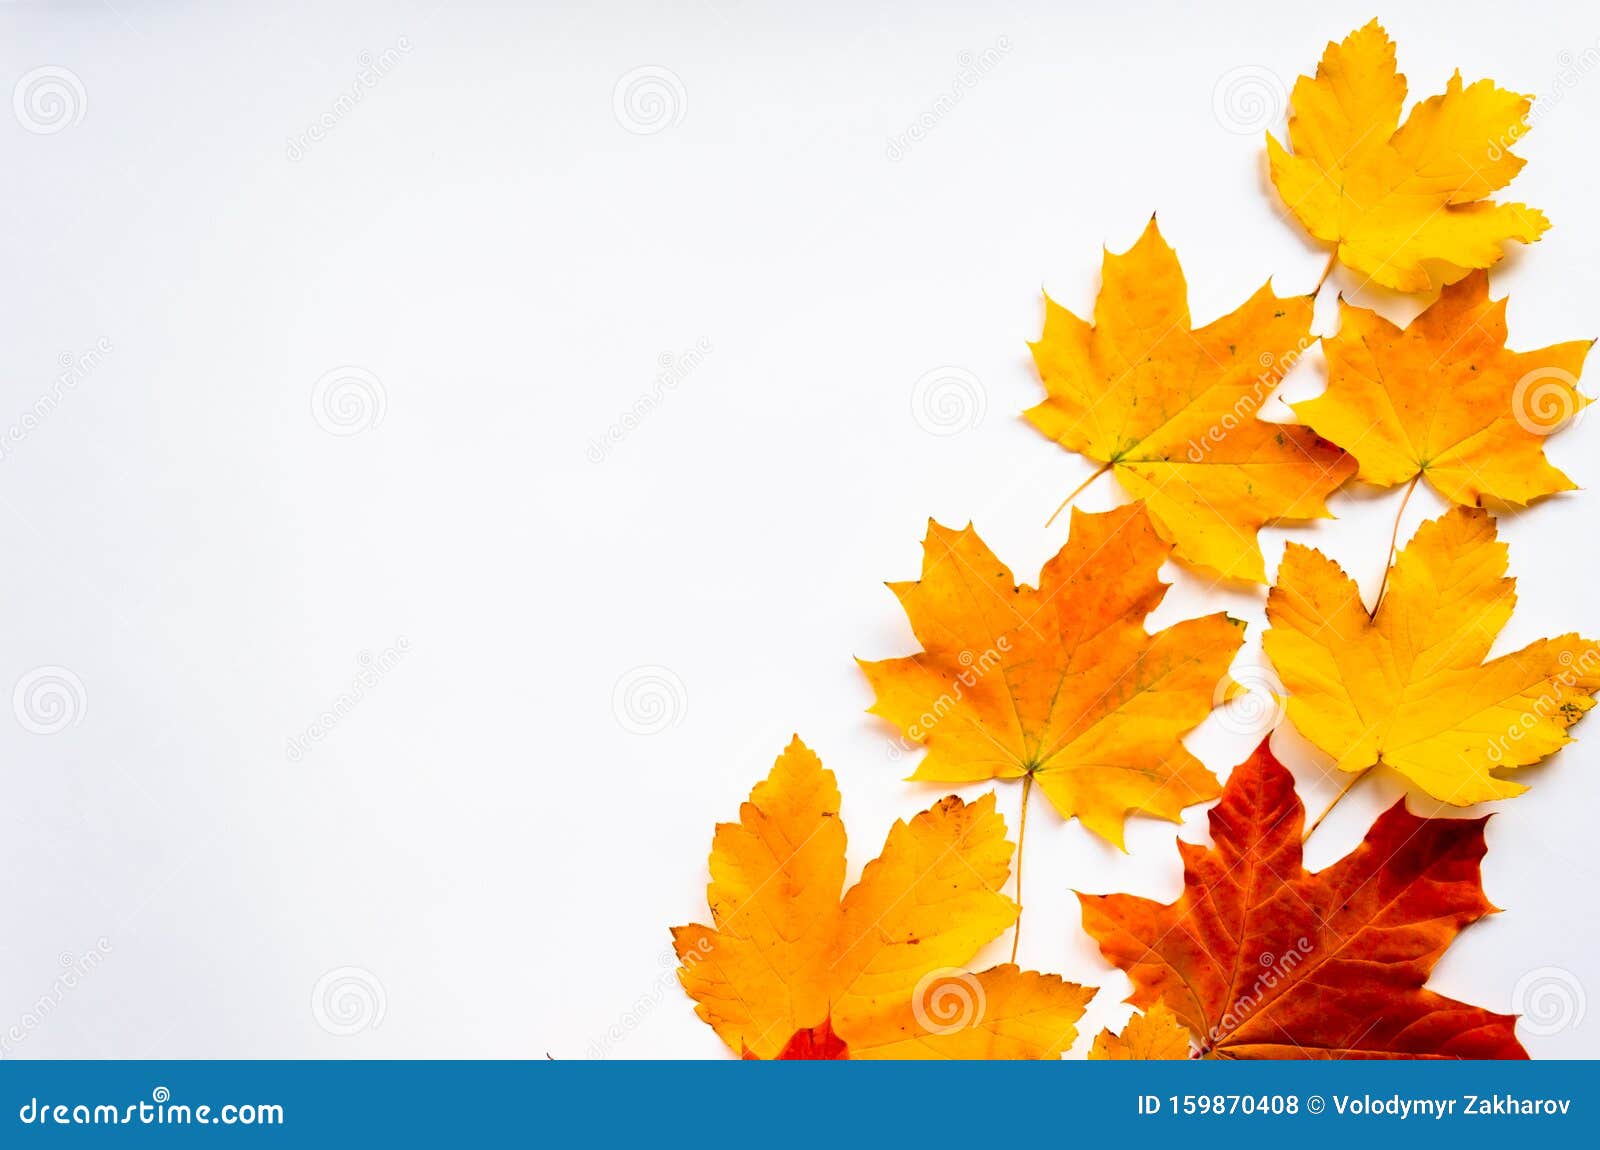 Рамки Для Фото Осенние Листья